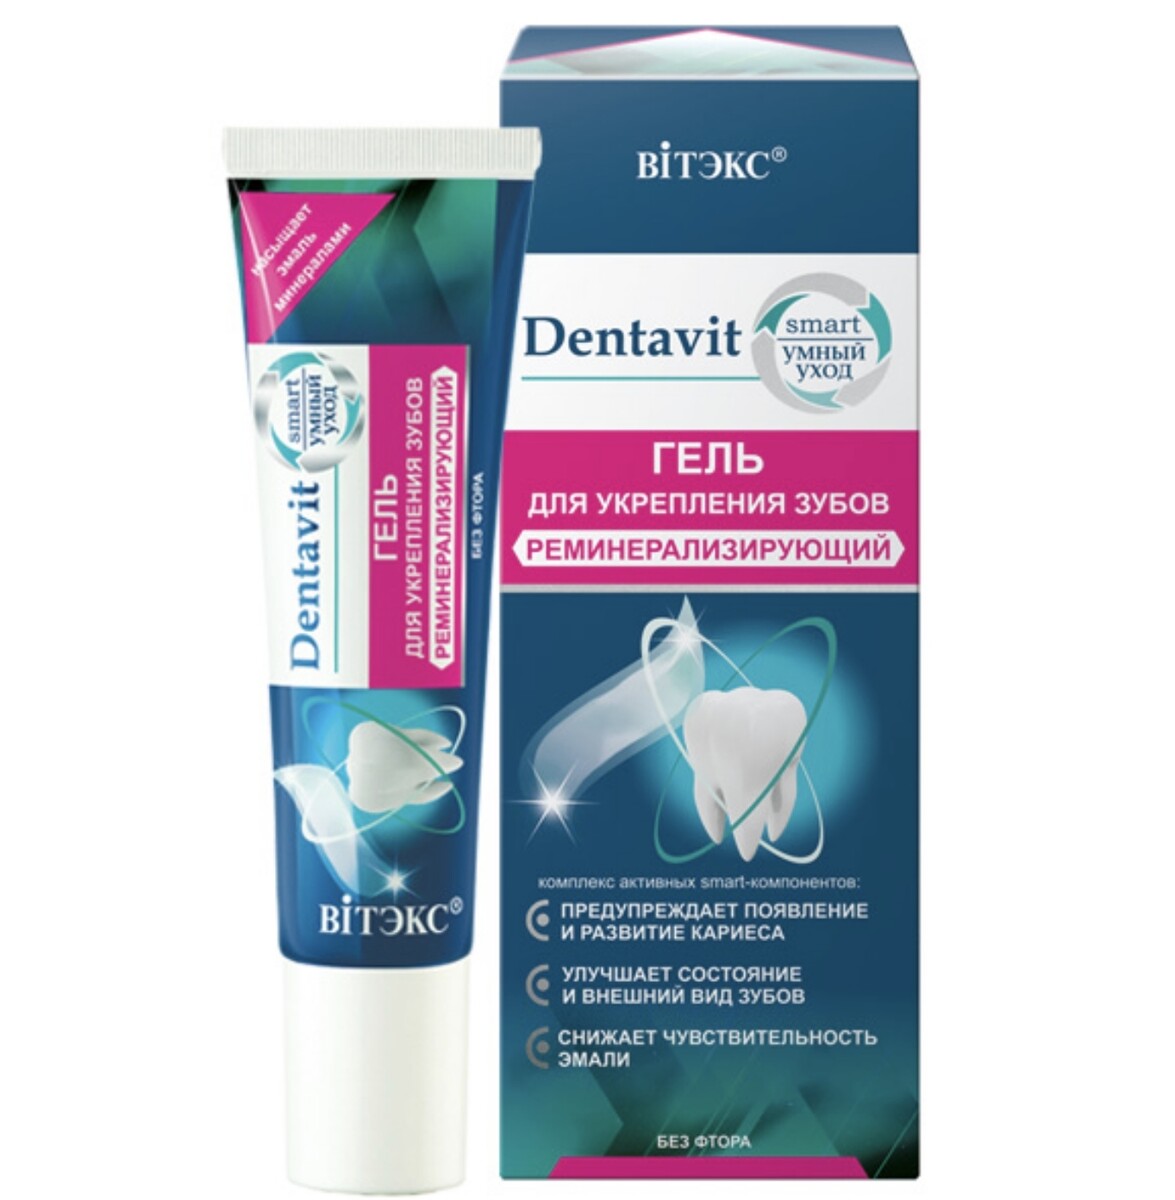 Dentavit-smart гель для укрепления зубов реминерализирующий (без фтора) 30г (без коробки) фломастер be smart